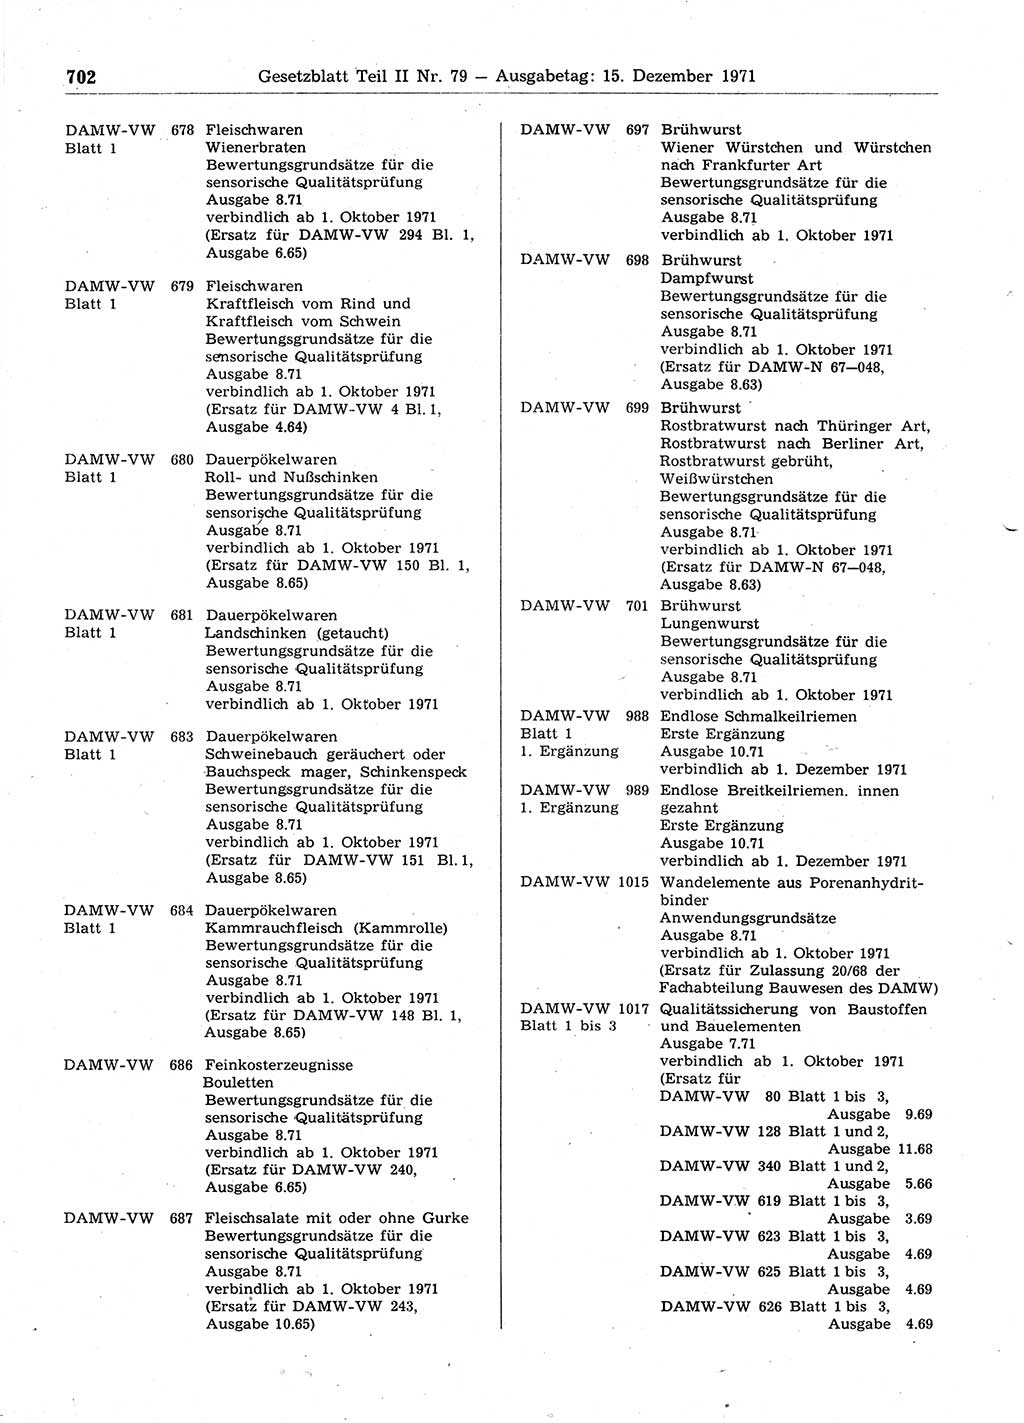 Gesetzblatt (GBl.) der Deutschen Demokratischen Republik (DDR) Teil ⅠⅠ 1971, Seite 702 (GBl. DDR ⅠⅠ 1971, S. 702)